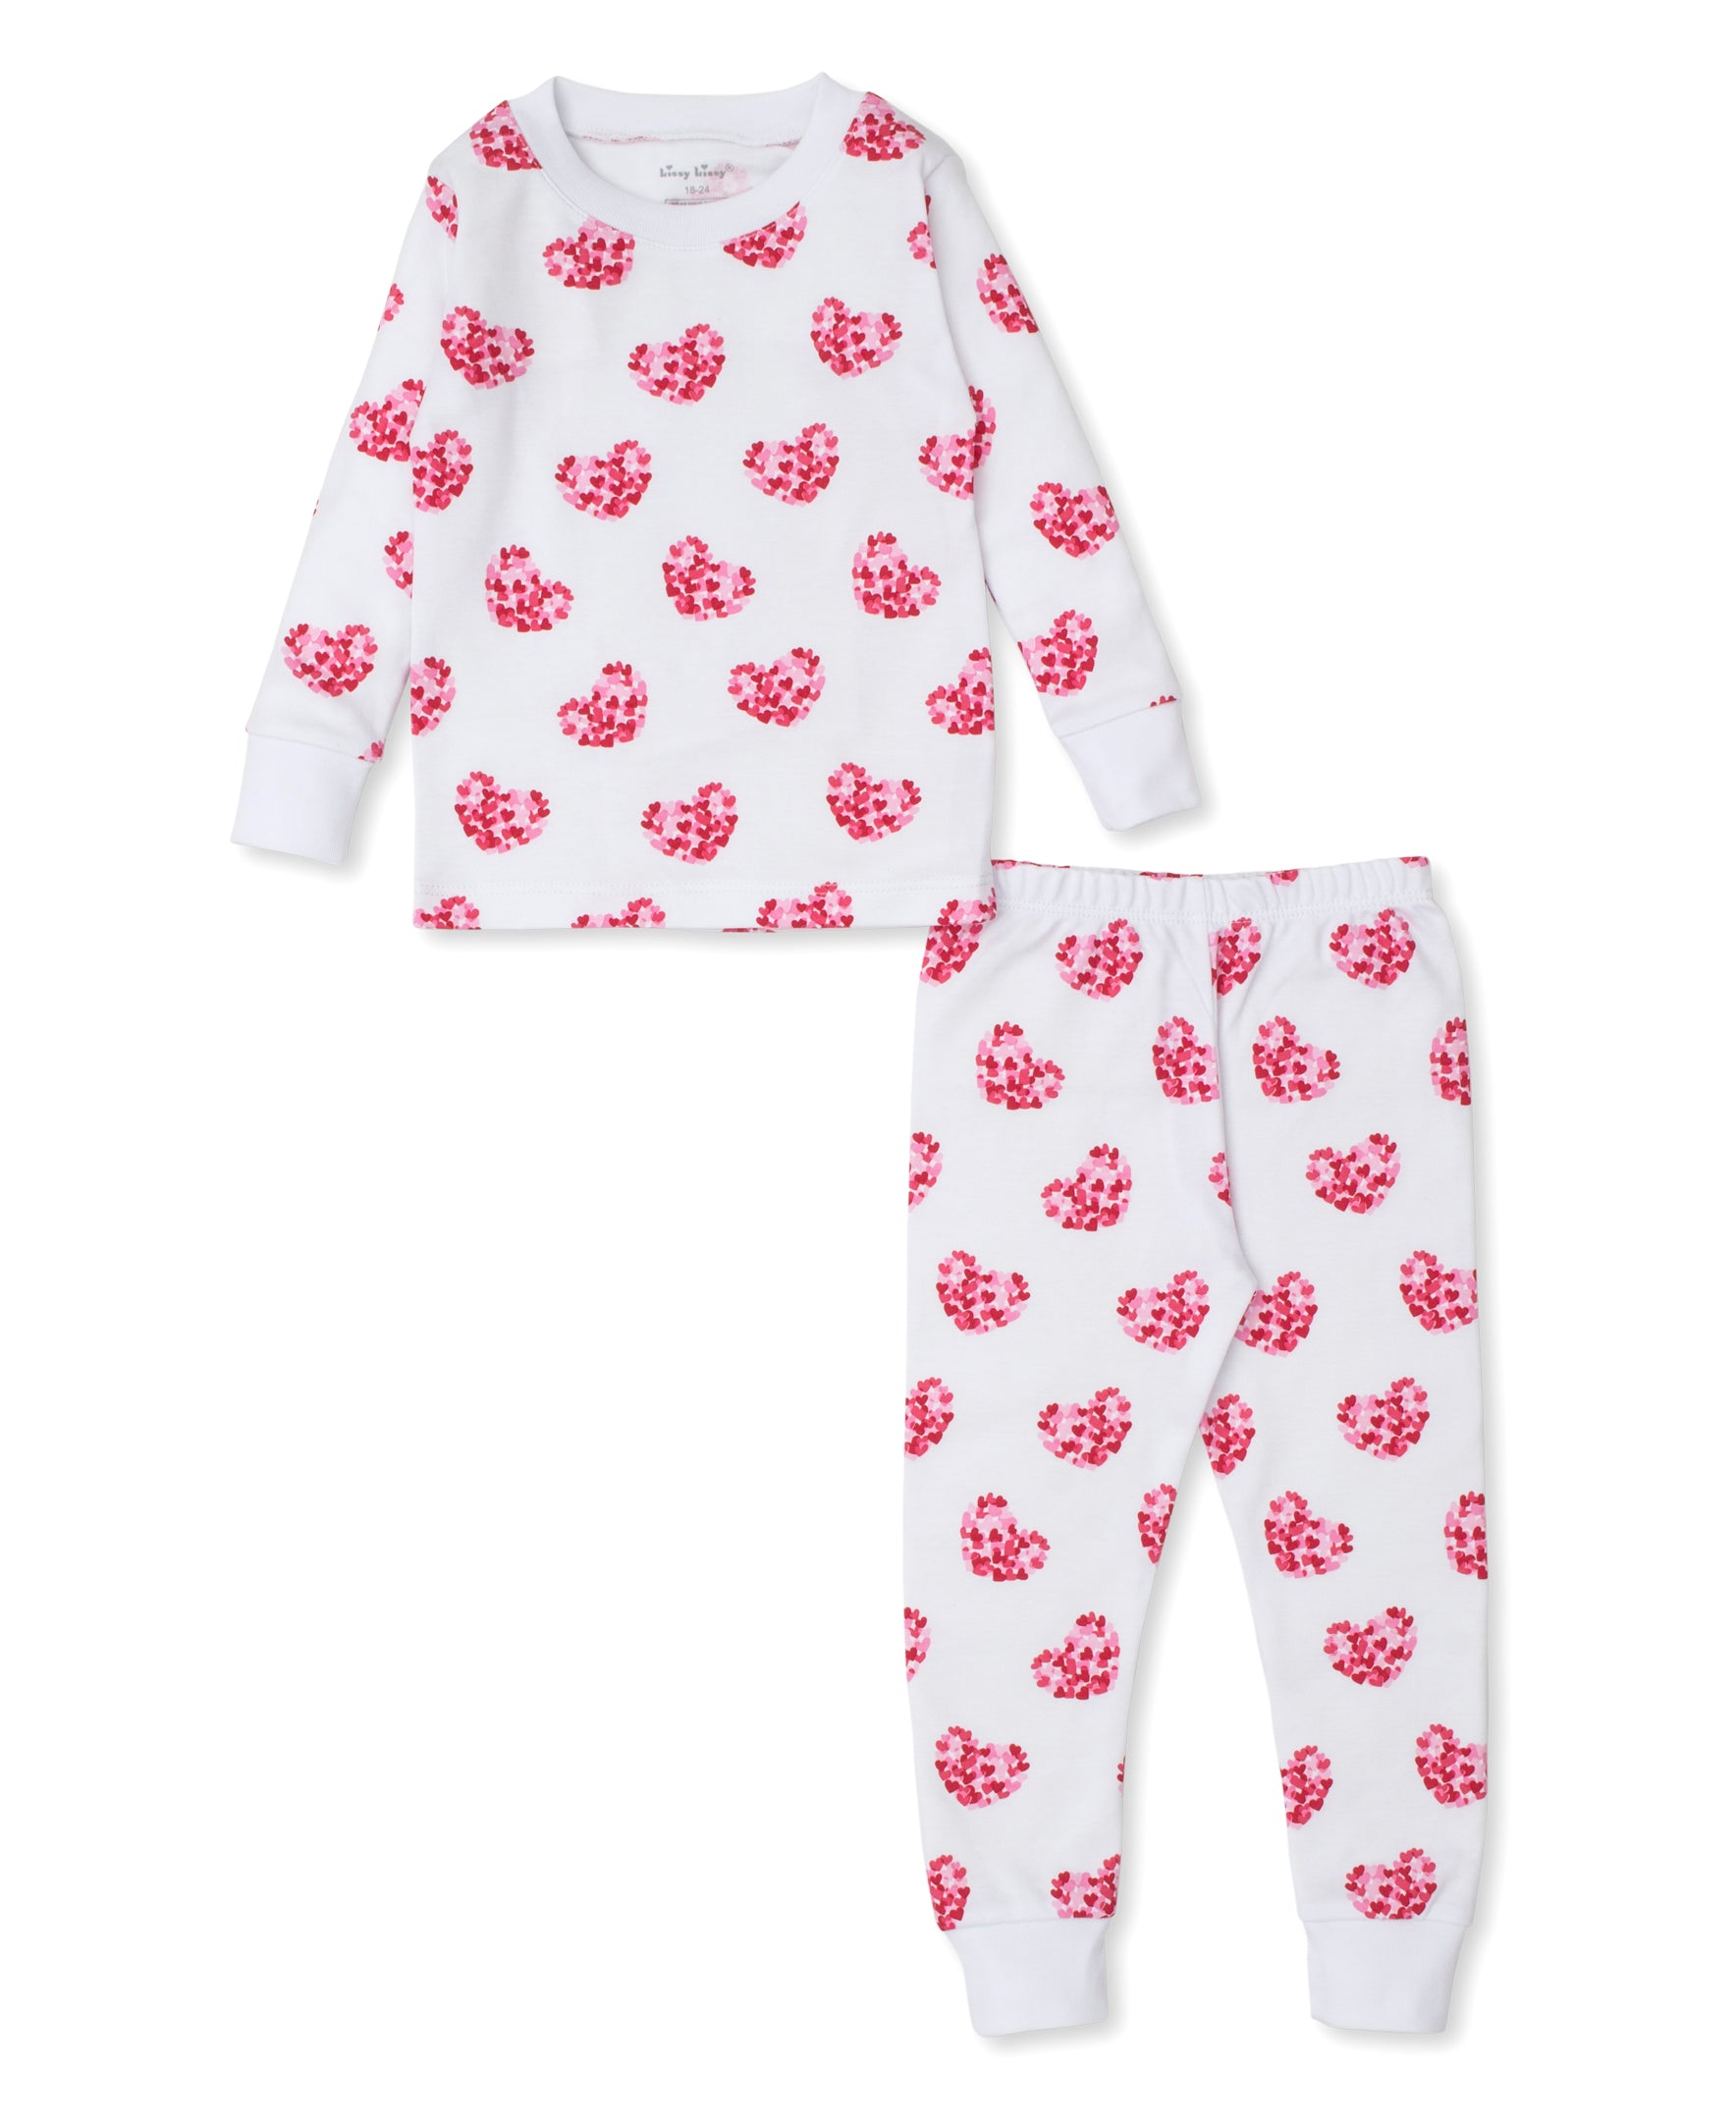 Heart of Hearts Toddler Pajama Set - Kissy Kissy